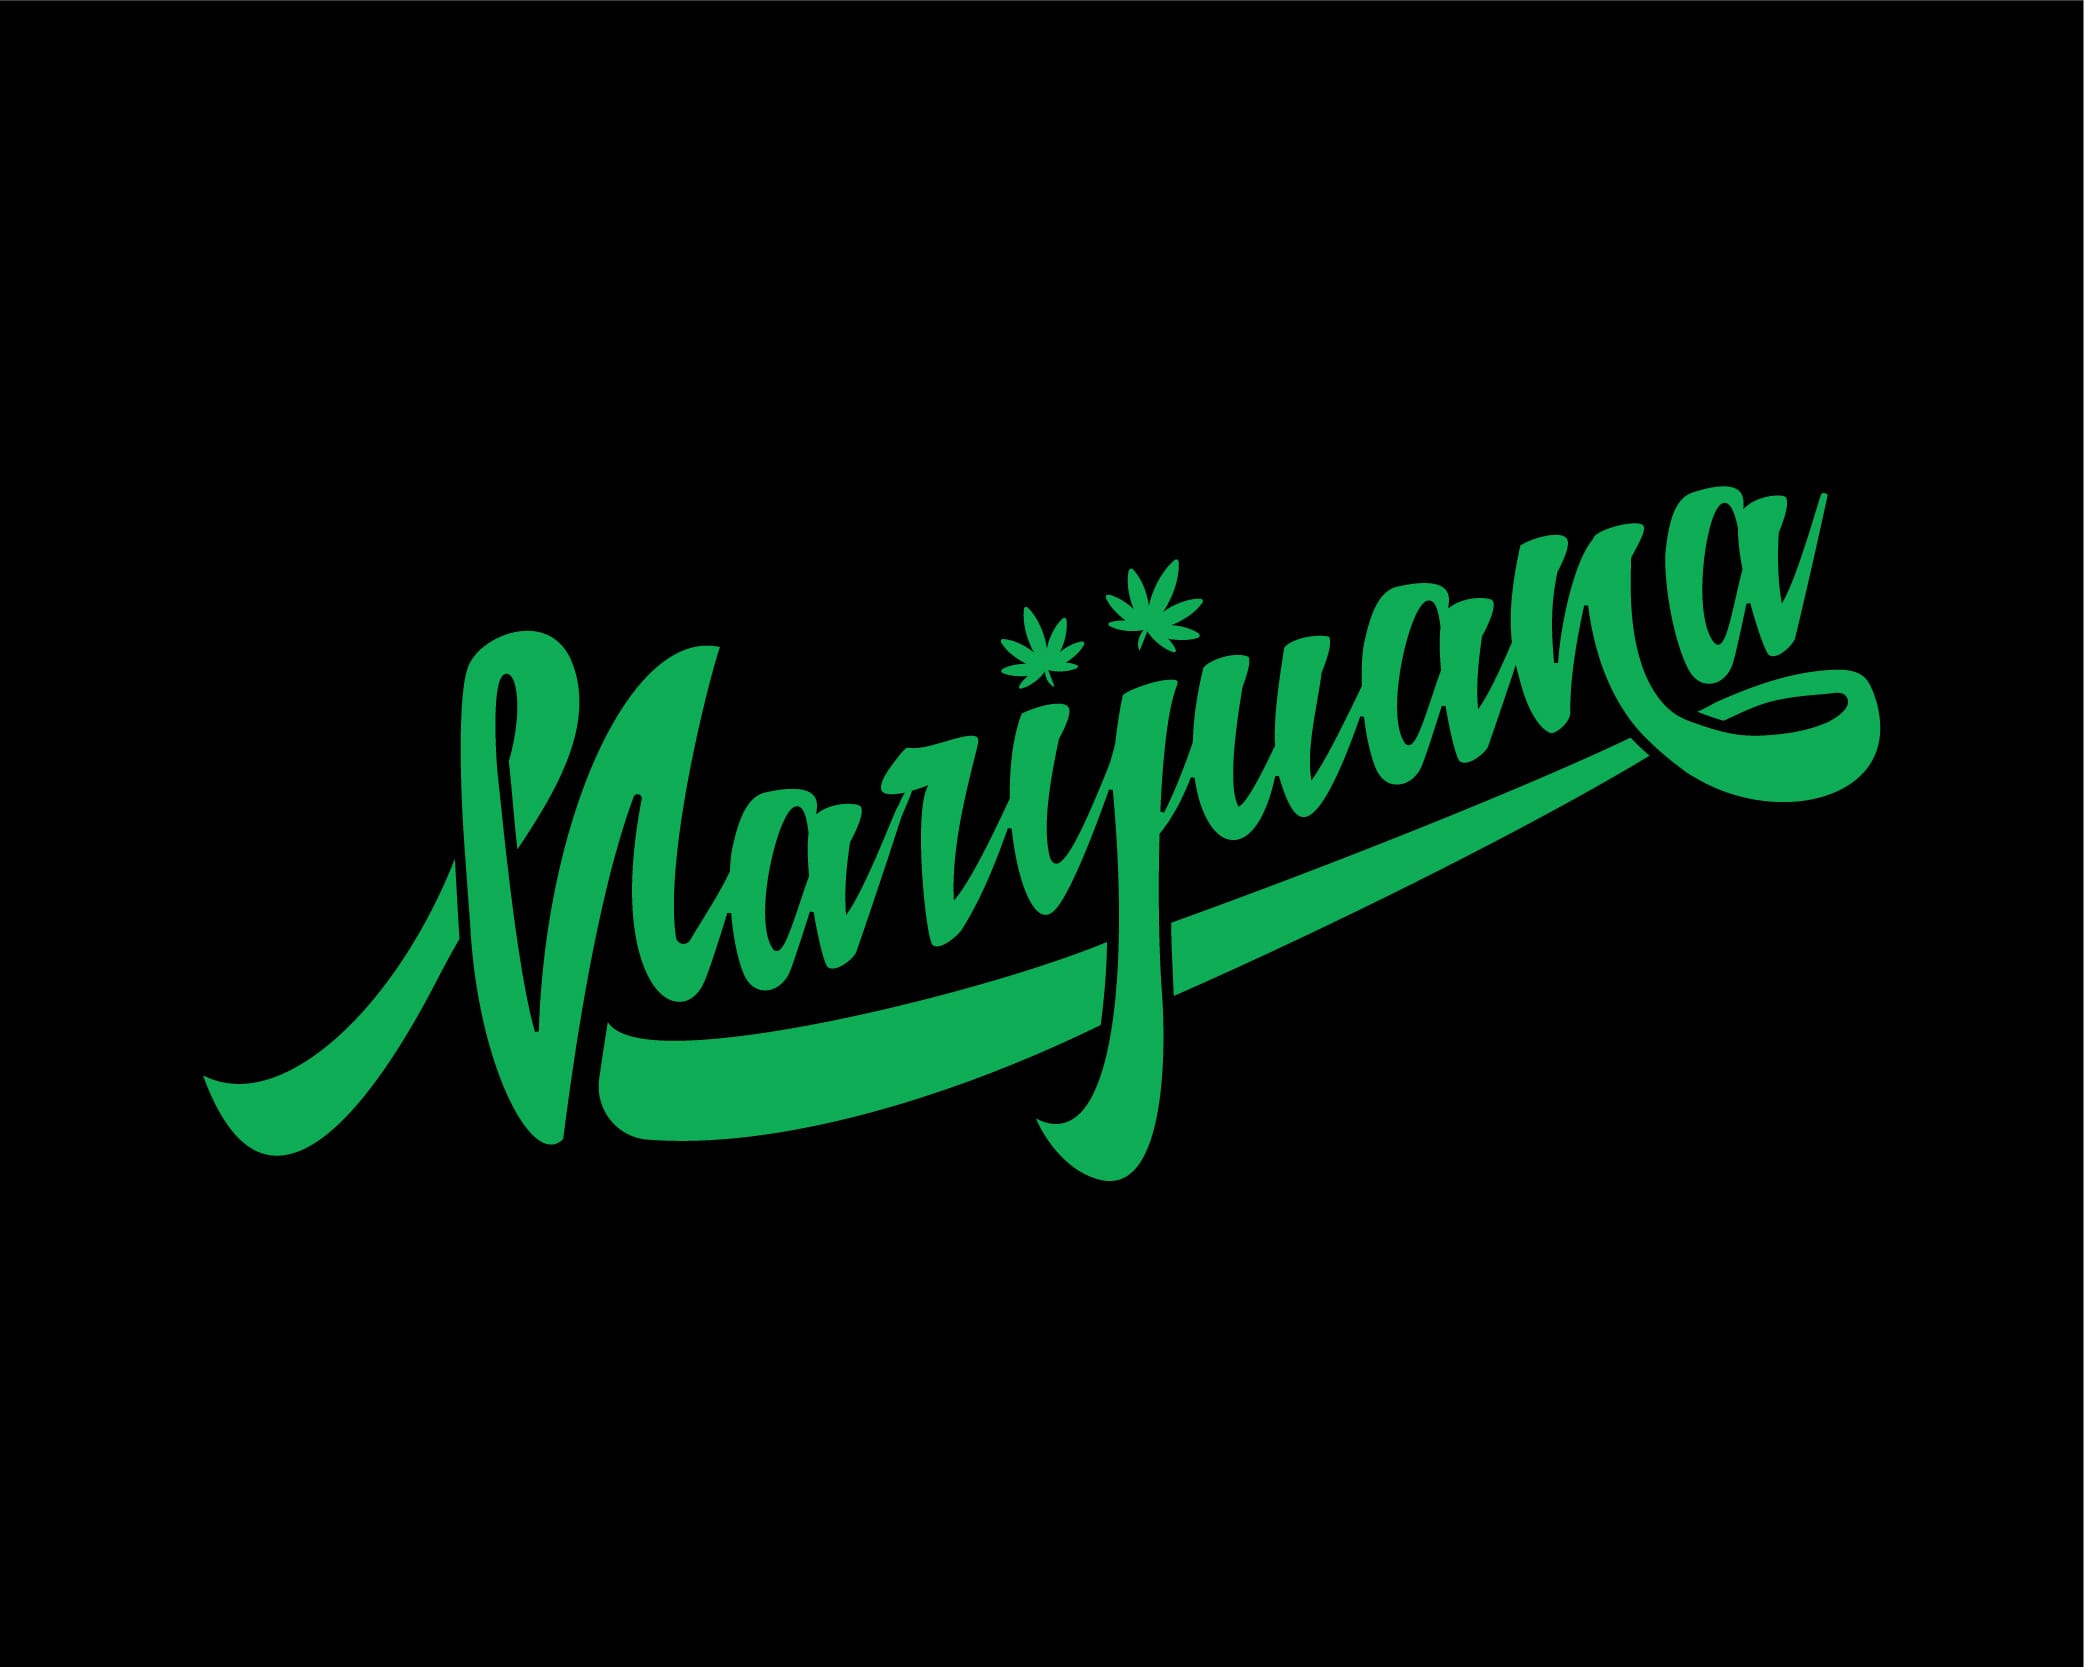 Myths about marijuana